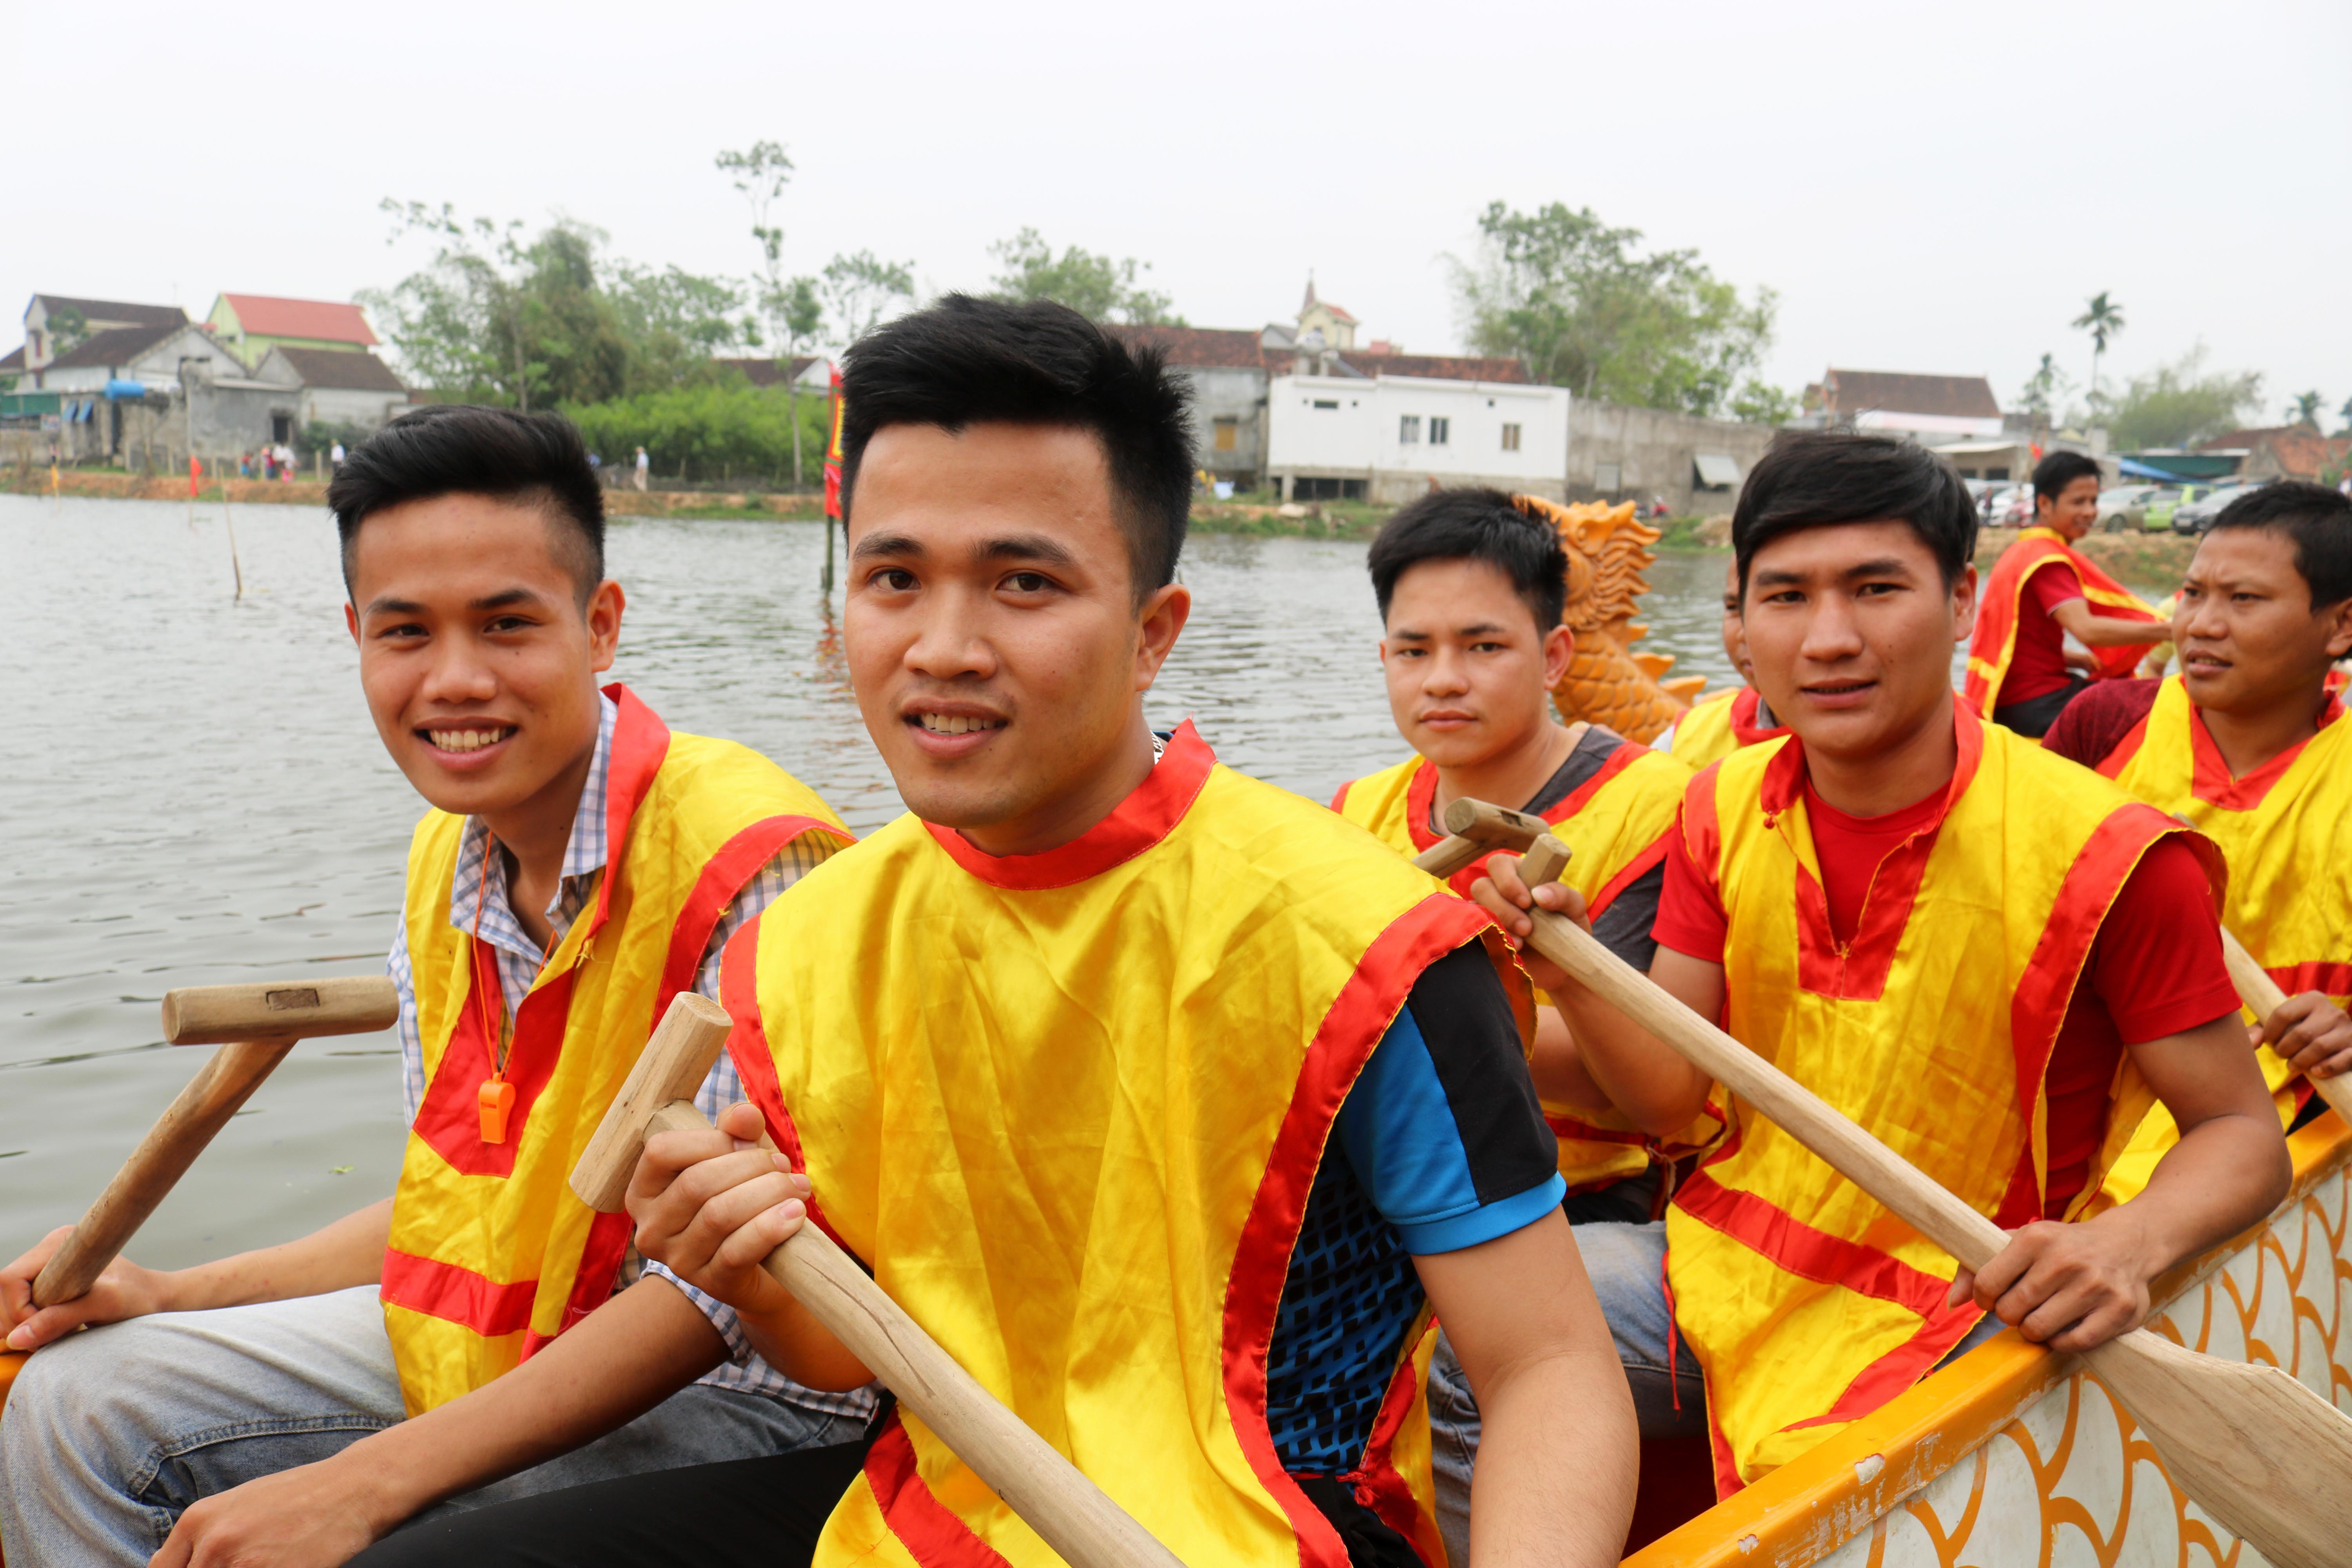 2.Dịp này, thanh niên trai tráng ở các xóm trong xã Phúc Thành đều được lựa chọn để đưa vào đội đua thuyền